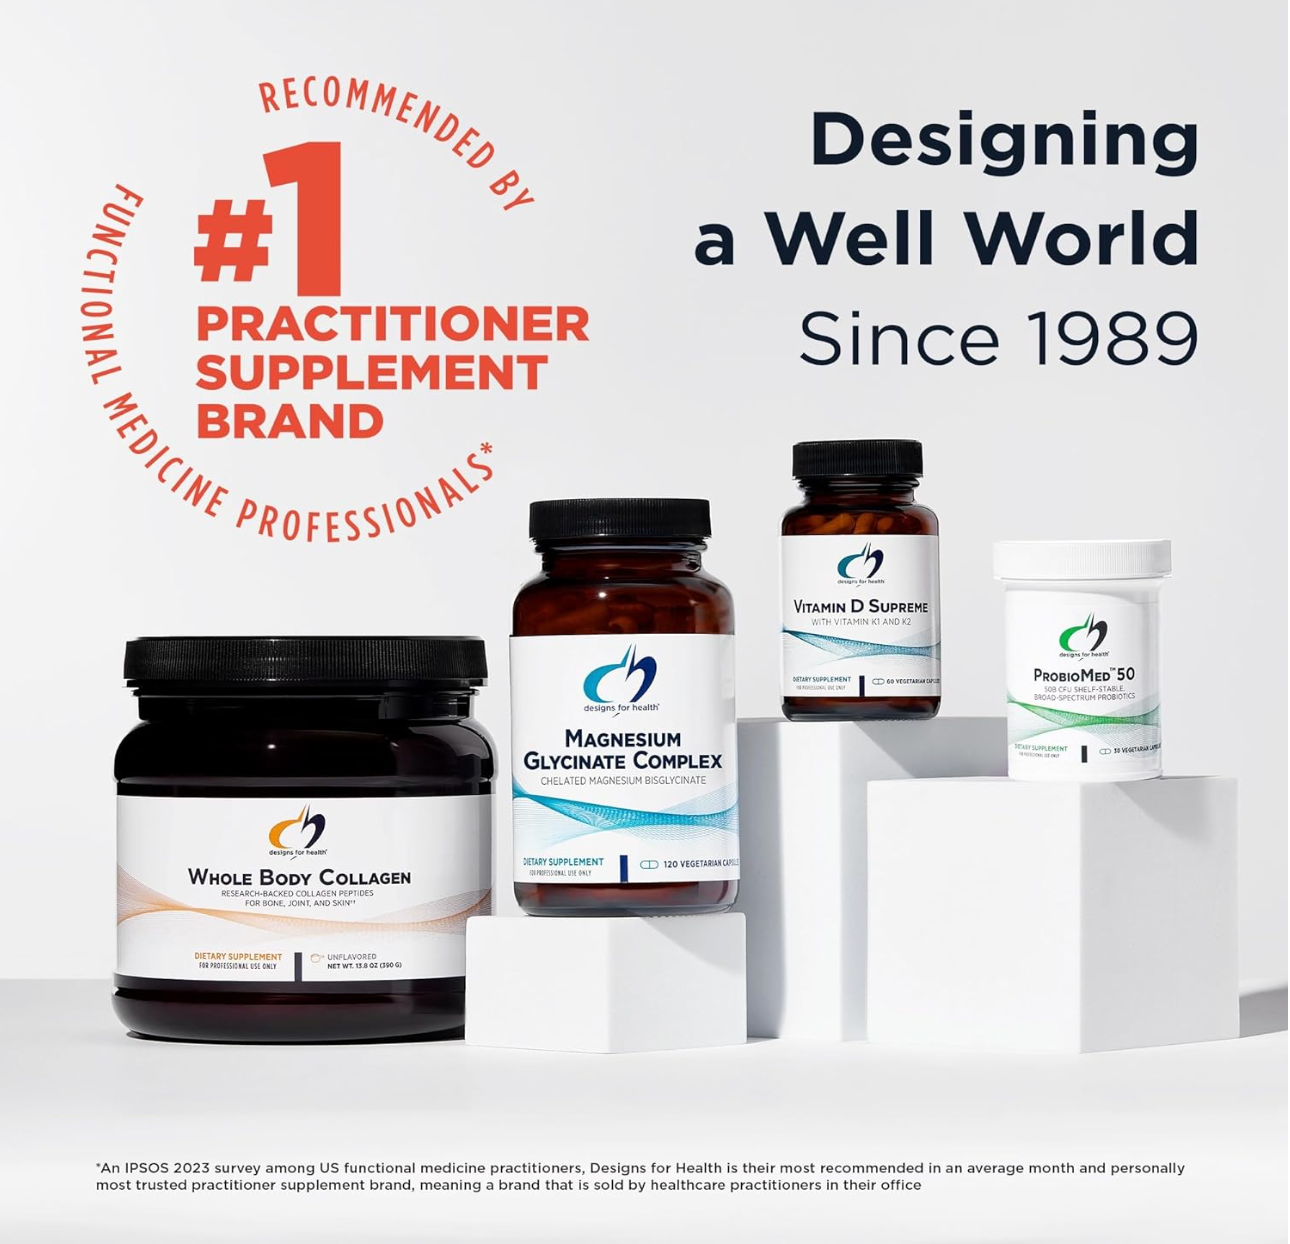 Designs for Health Endotrim Capsules